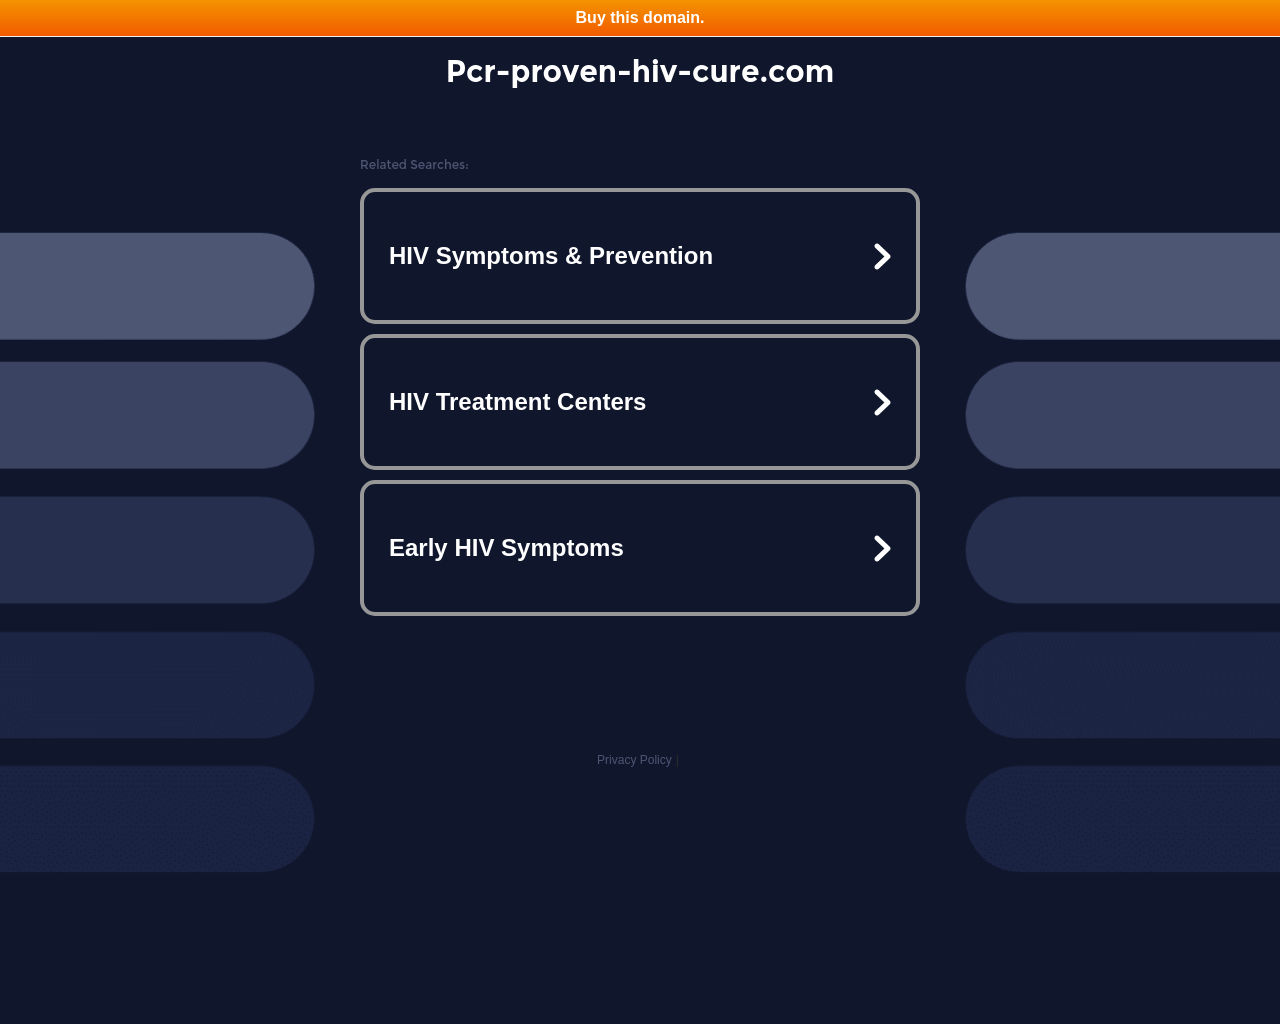 pcr-proven-hiv-cure.com